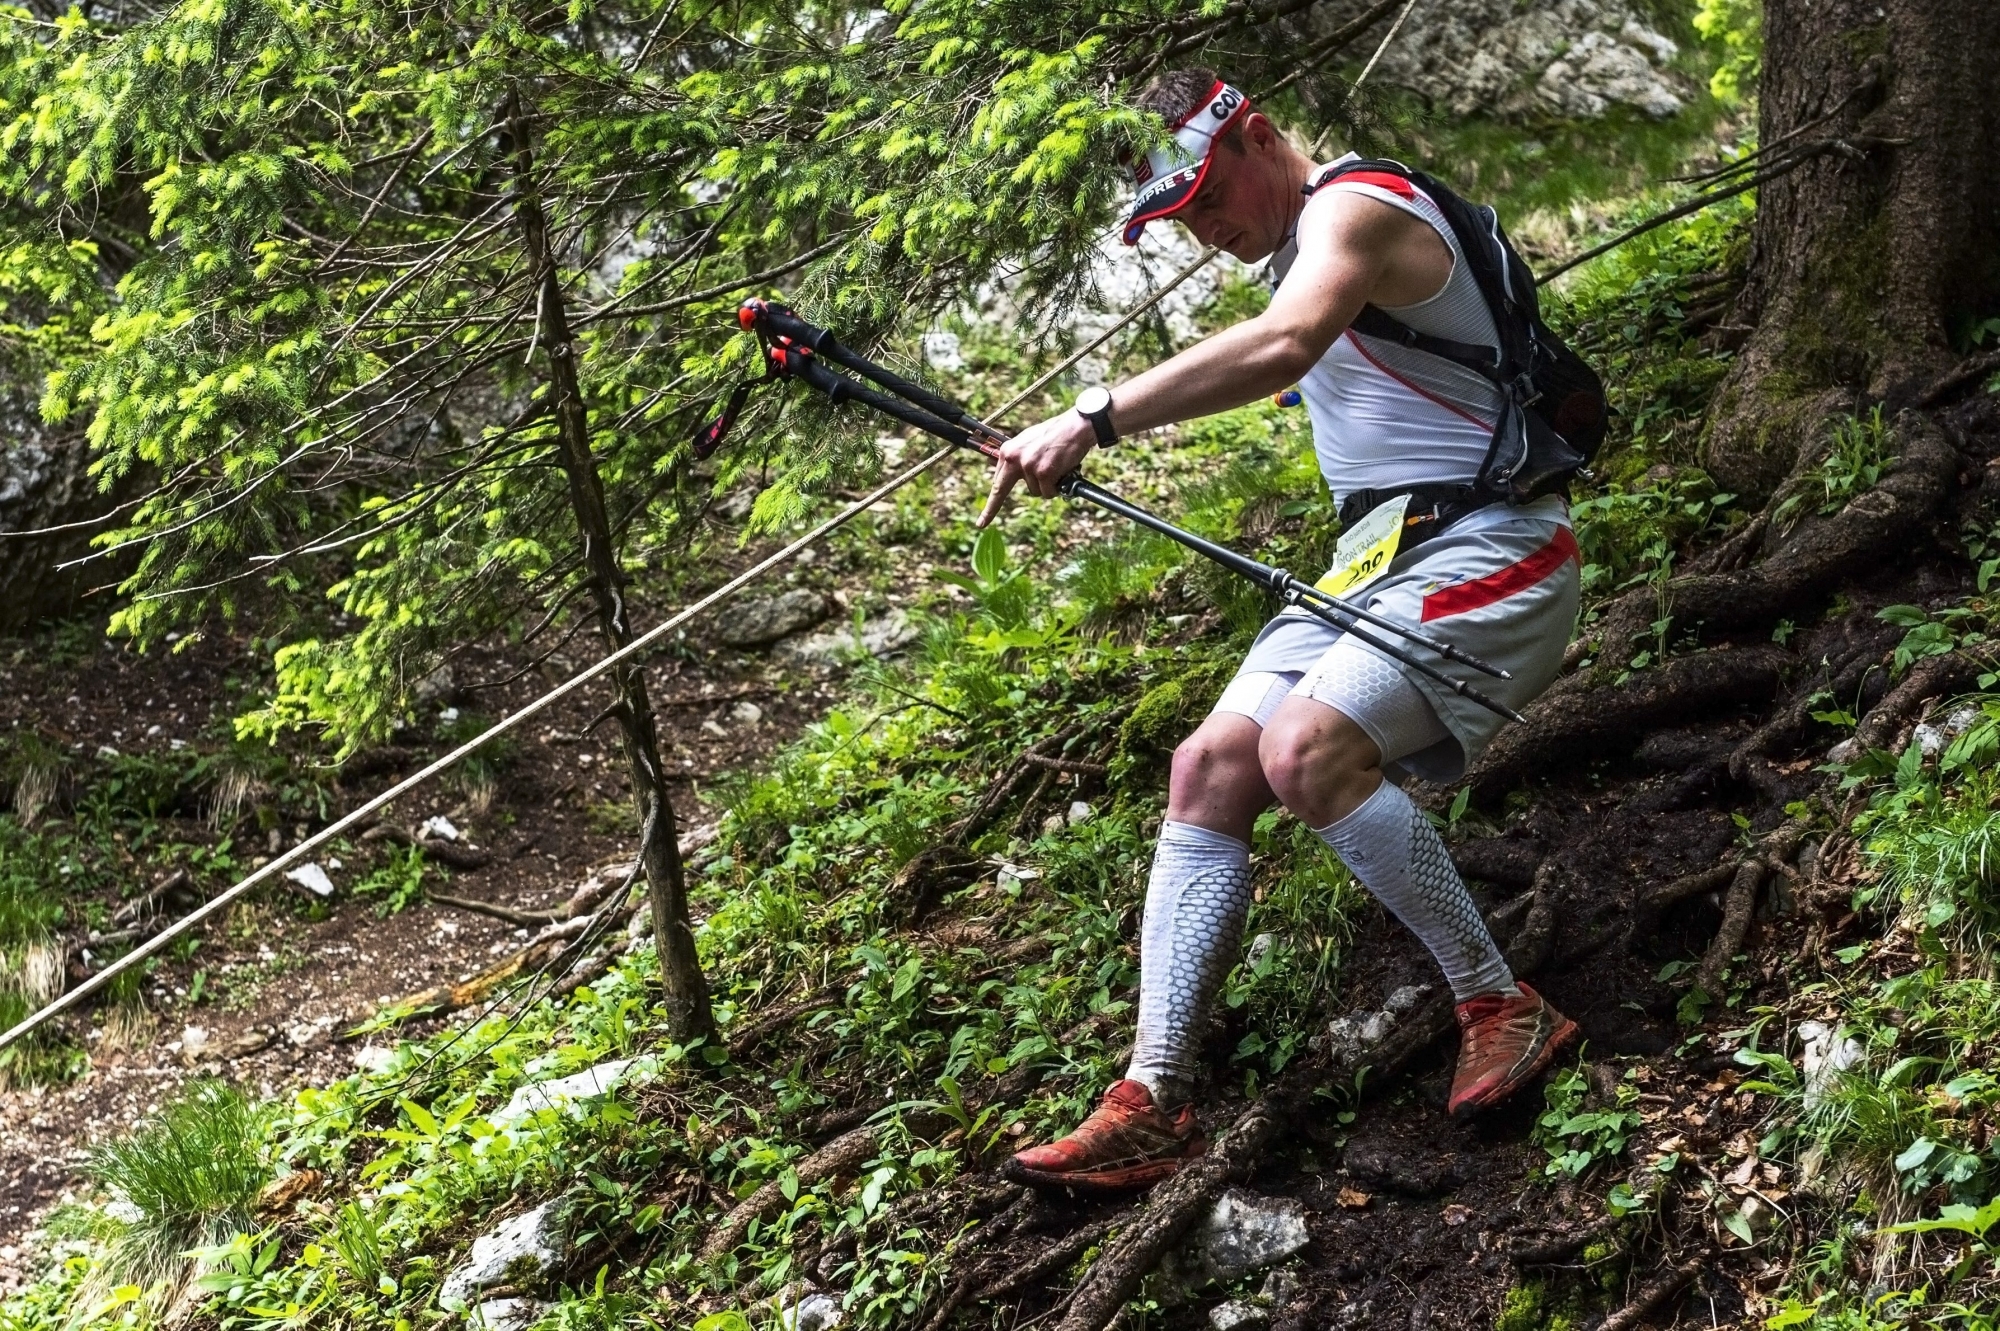 Les traileurs, ici l'un des participants au Swiss Canyon Trail en 2018, possèdent désormais un attirail complet pour la pratique de ce sport.